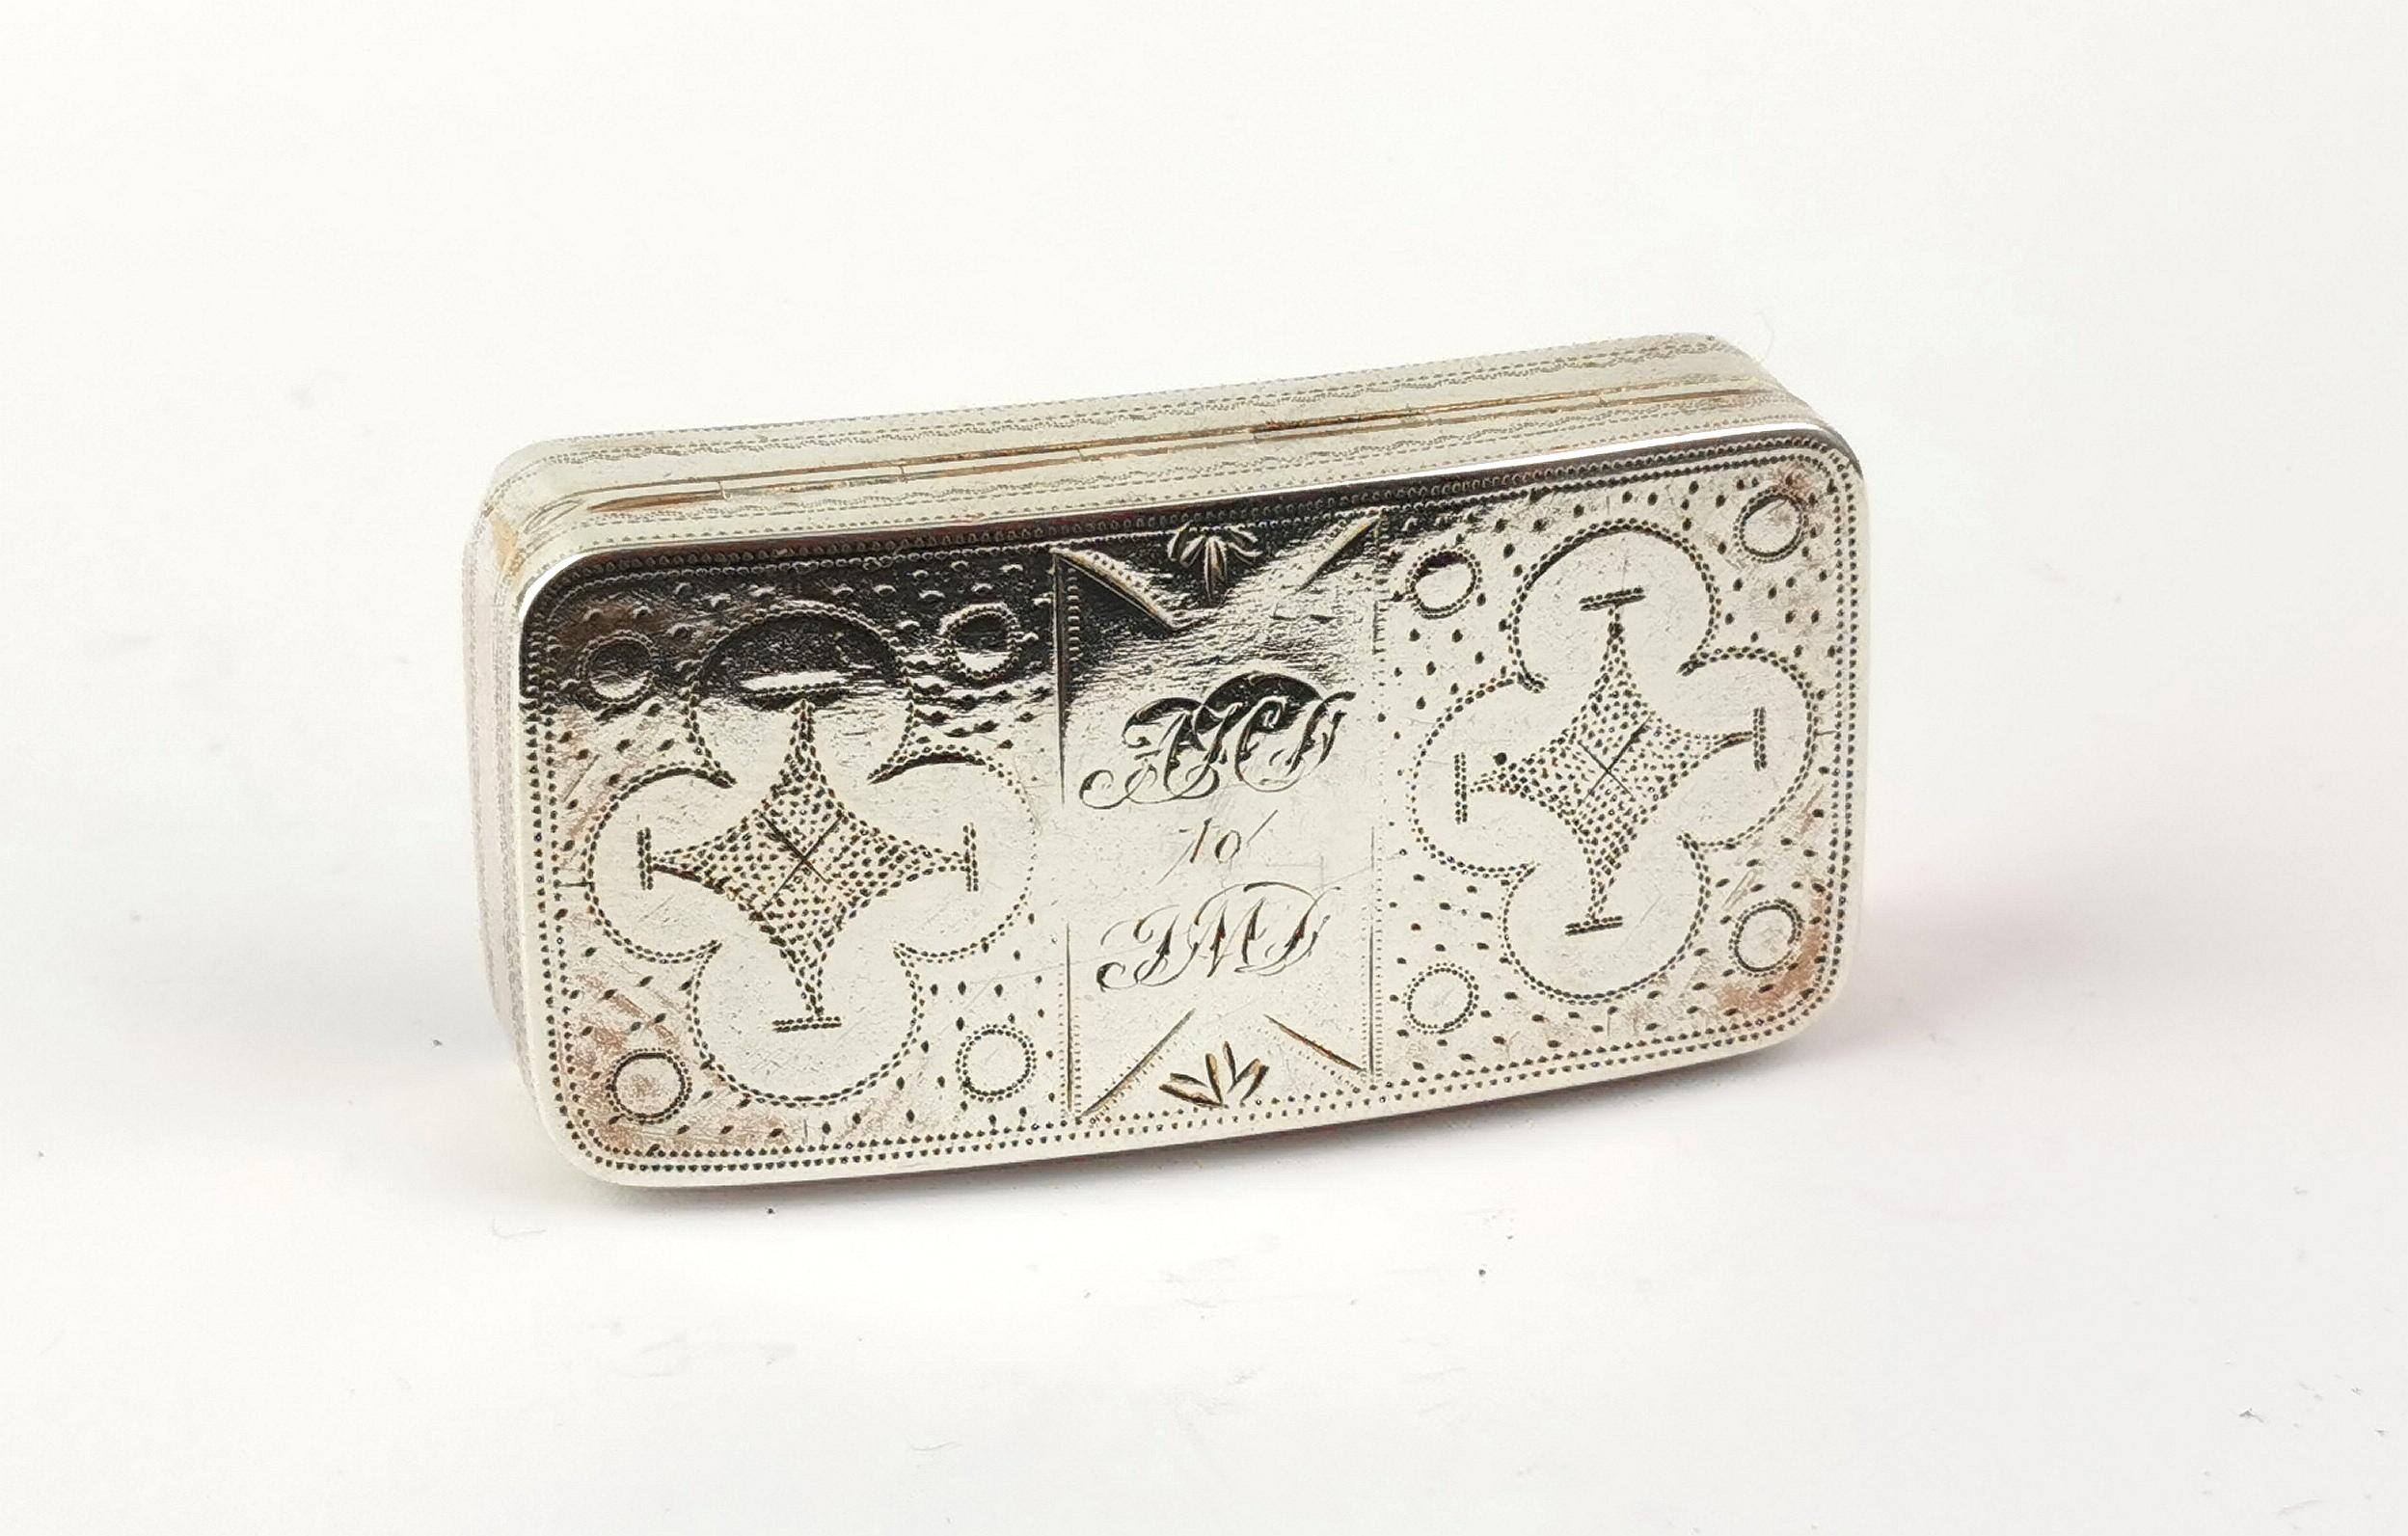 Eine fantastische antike georgianische Ära Sterling Silber Schnupftabakdose.

Es hat einen interessanten hellen Schnitt graviert Design sowohl oben und unten mit Initialen auf der Oberseite in Phantasieschrift.

Die Schachtel hat ein ergonomisch